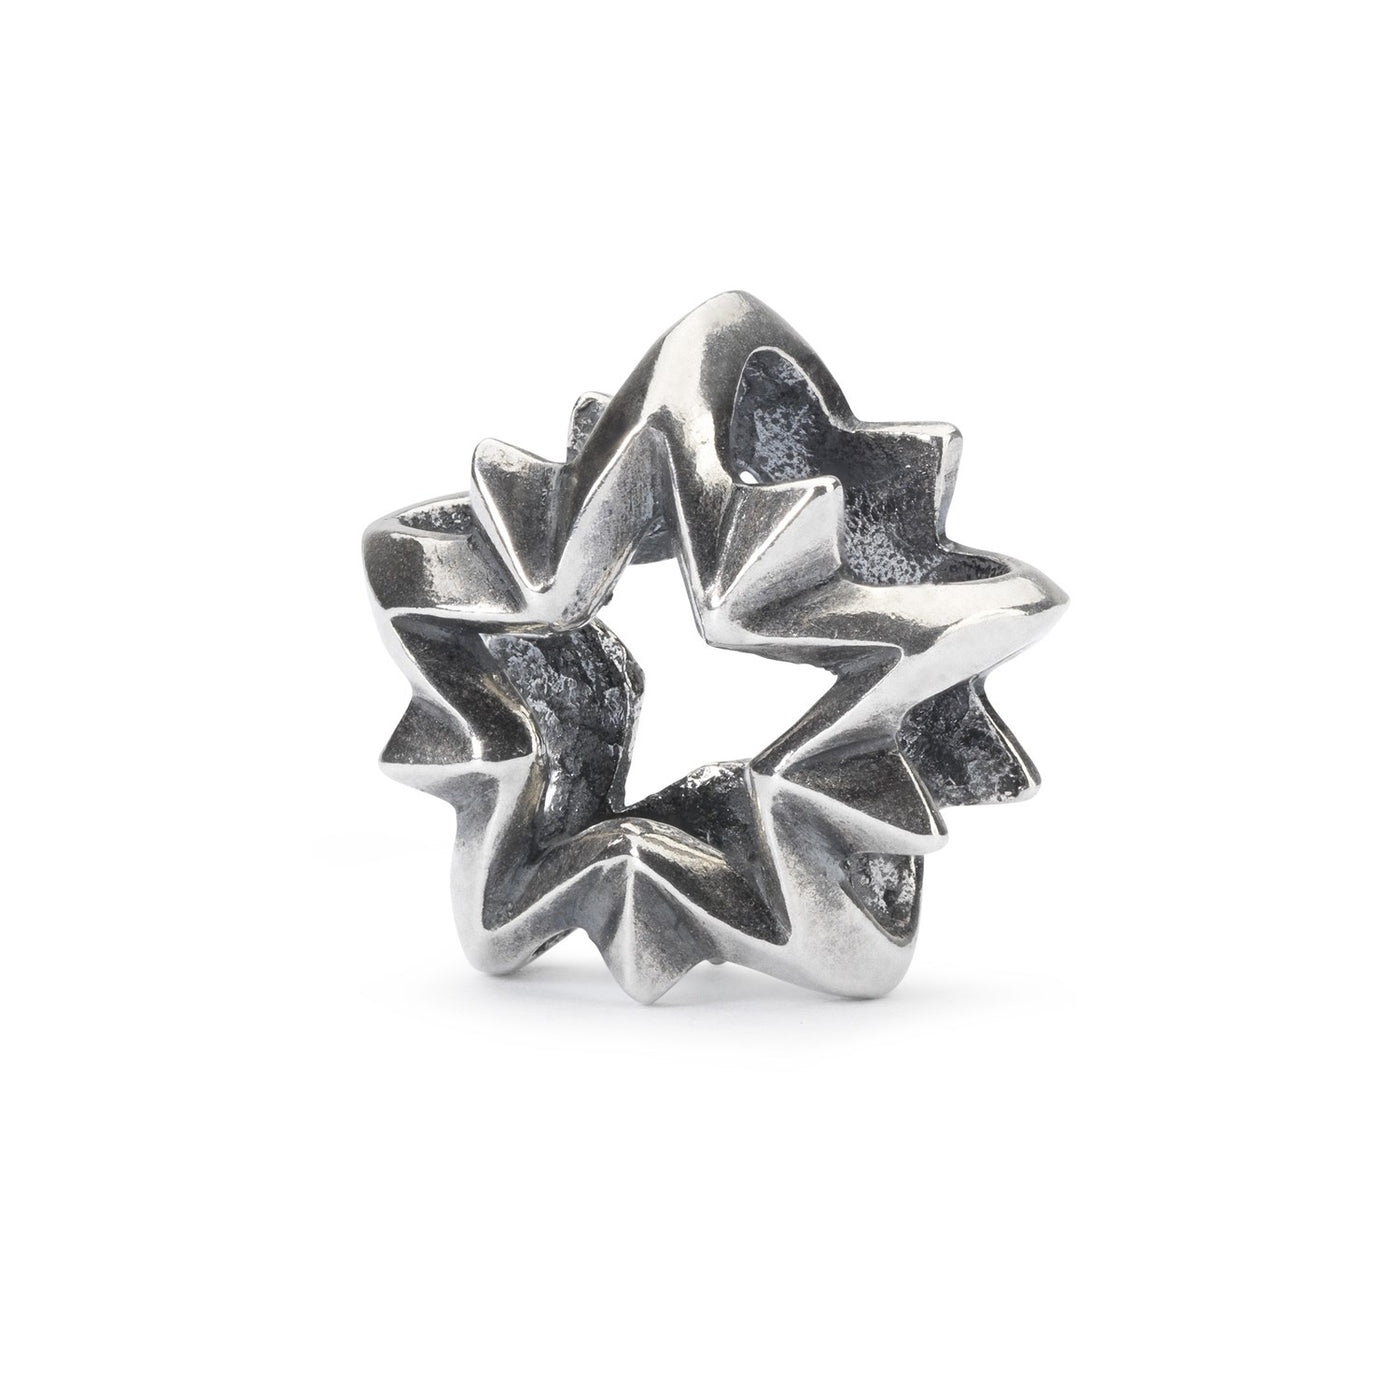 Ledestjerne sølvkugle med et skinnende stjernedesign, der symboliserer vejledning og inspiration, til dit Trollbeads smykke.